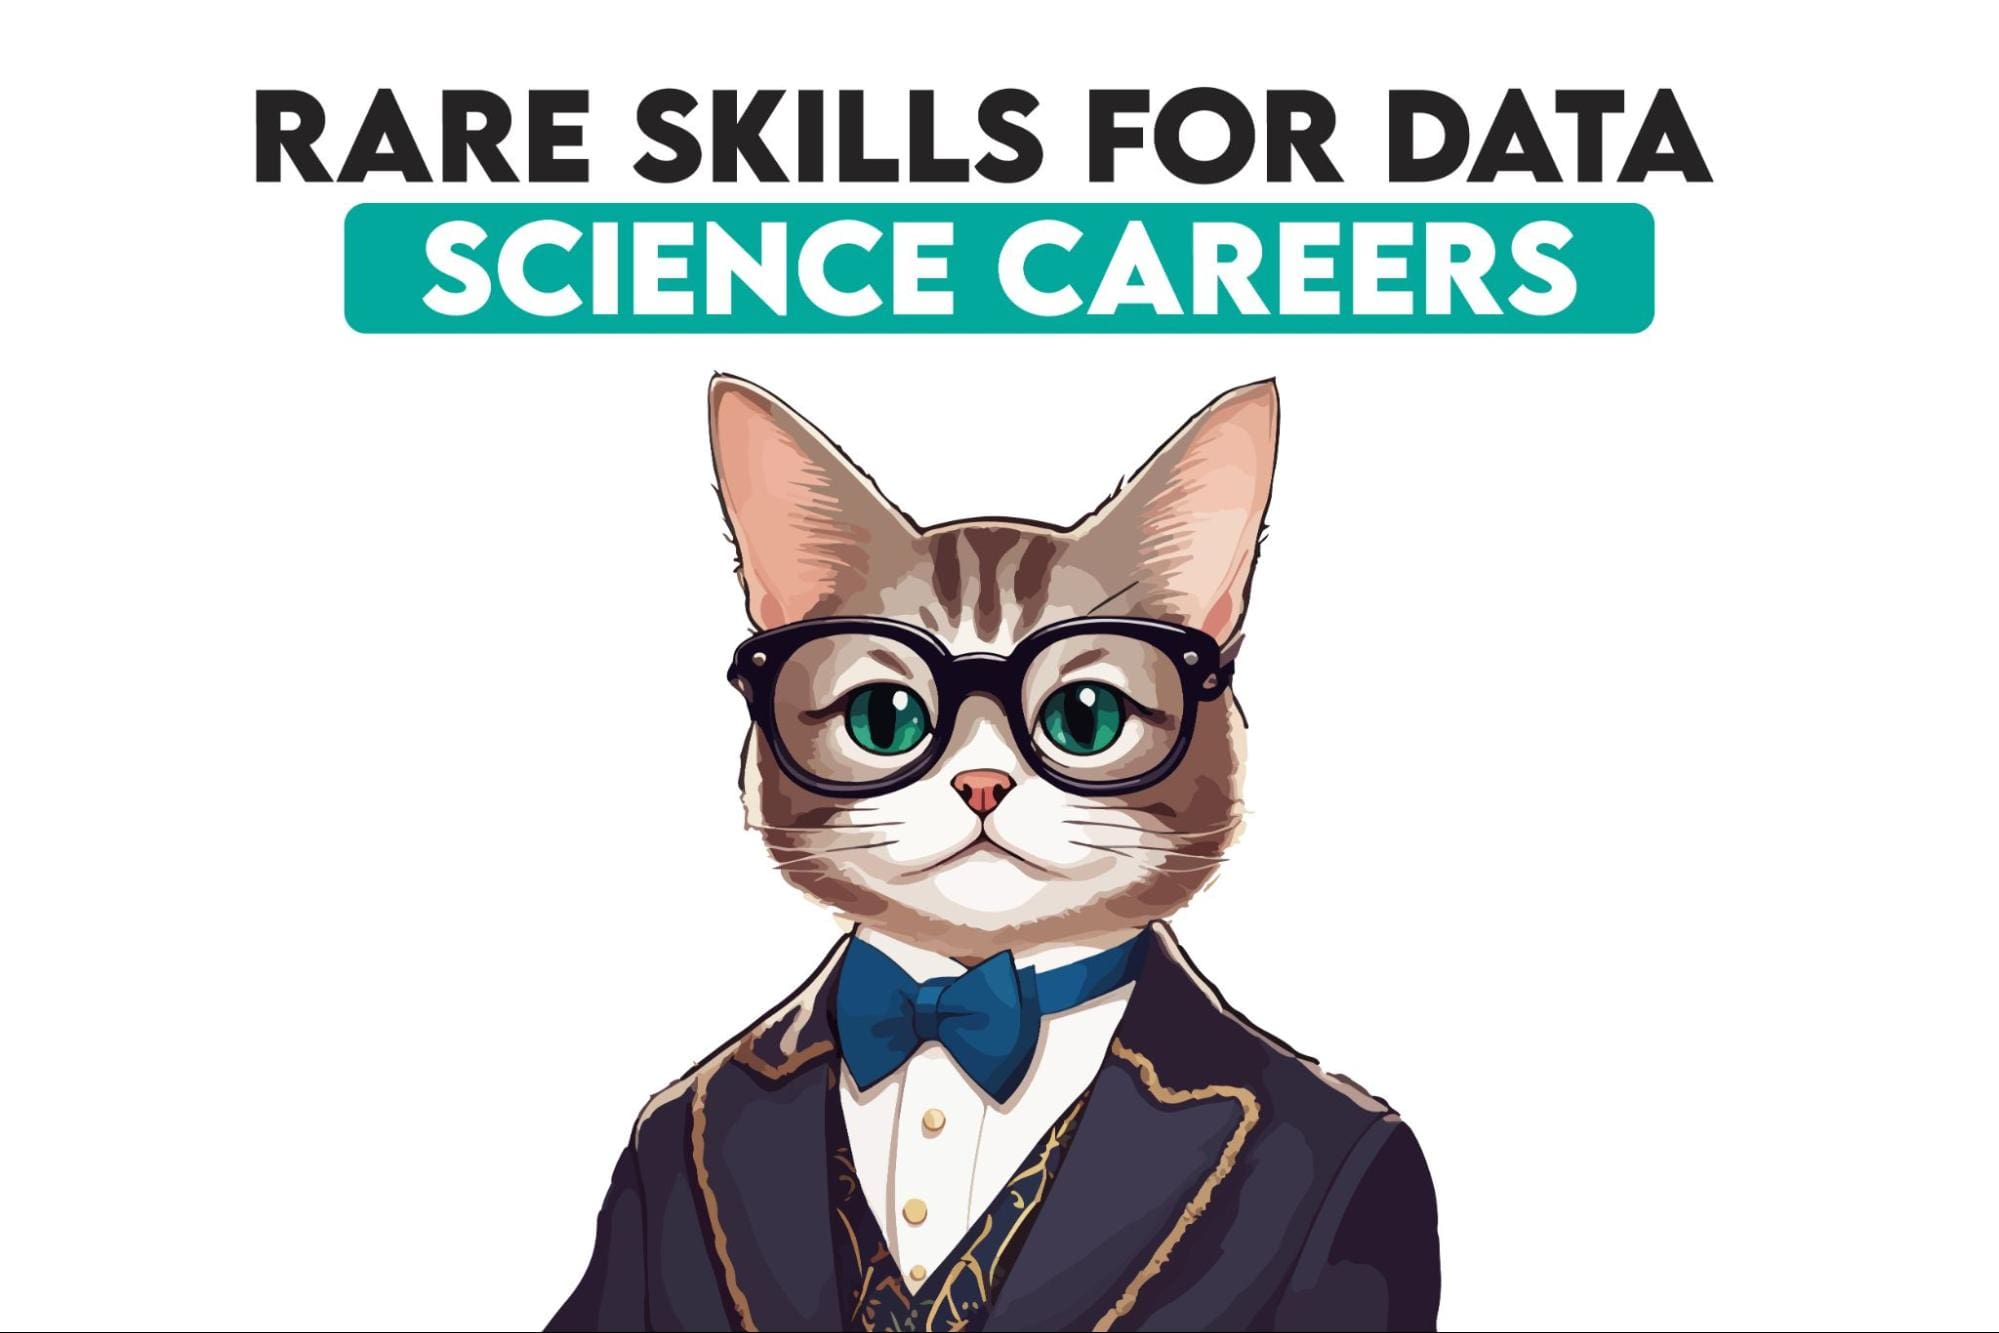 5 مهارات نادرة في علم البيانات يمكن أن تساعدك في الحصول على عمل